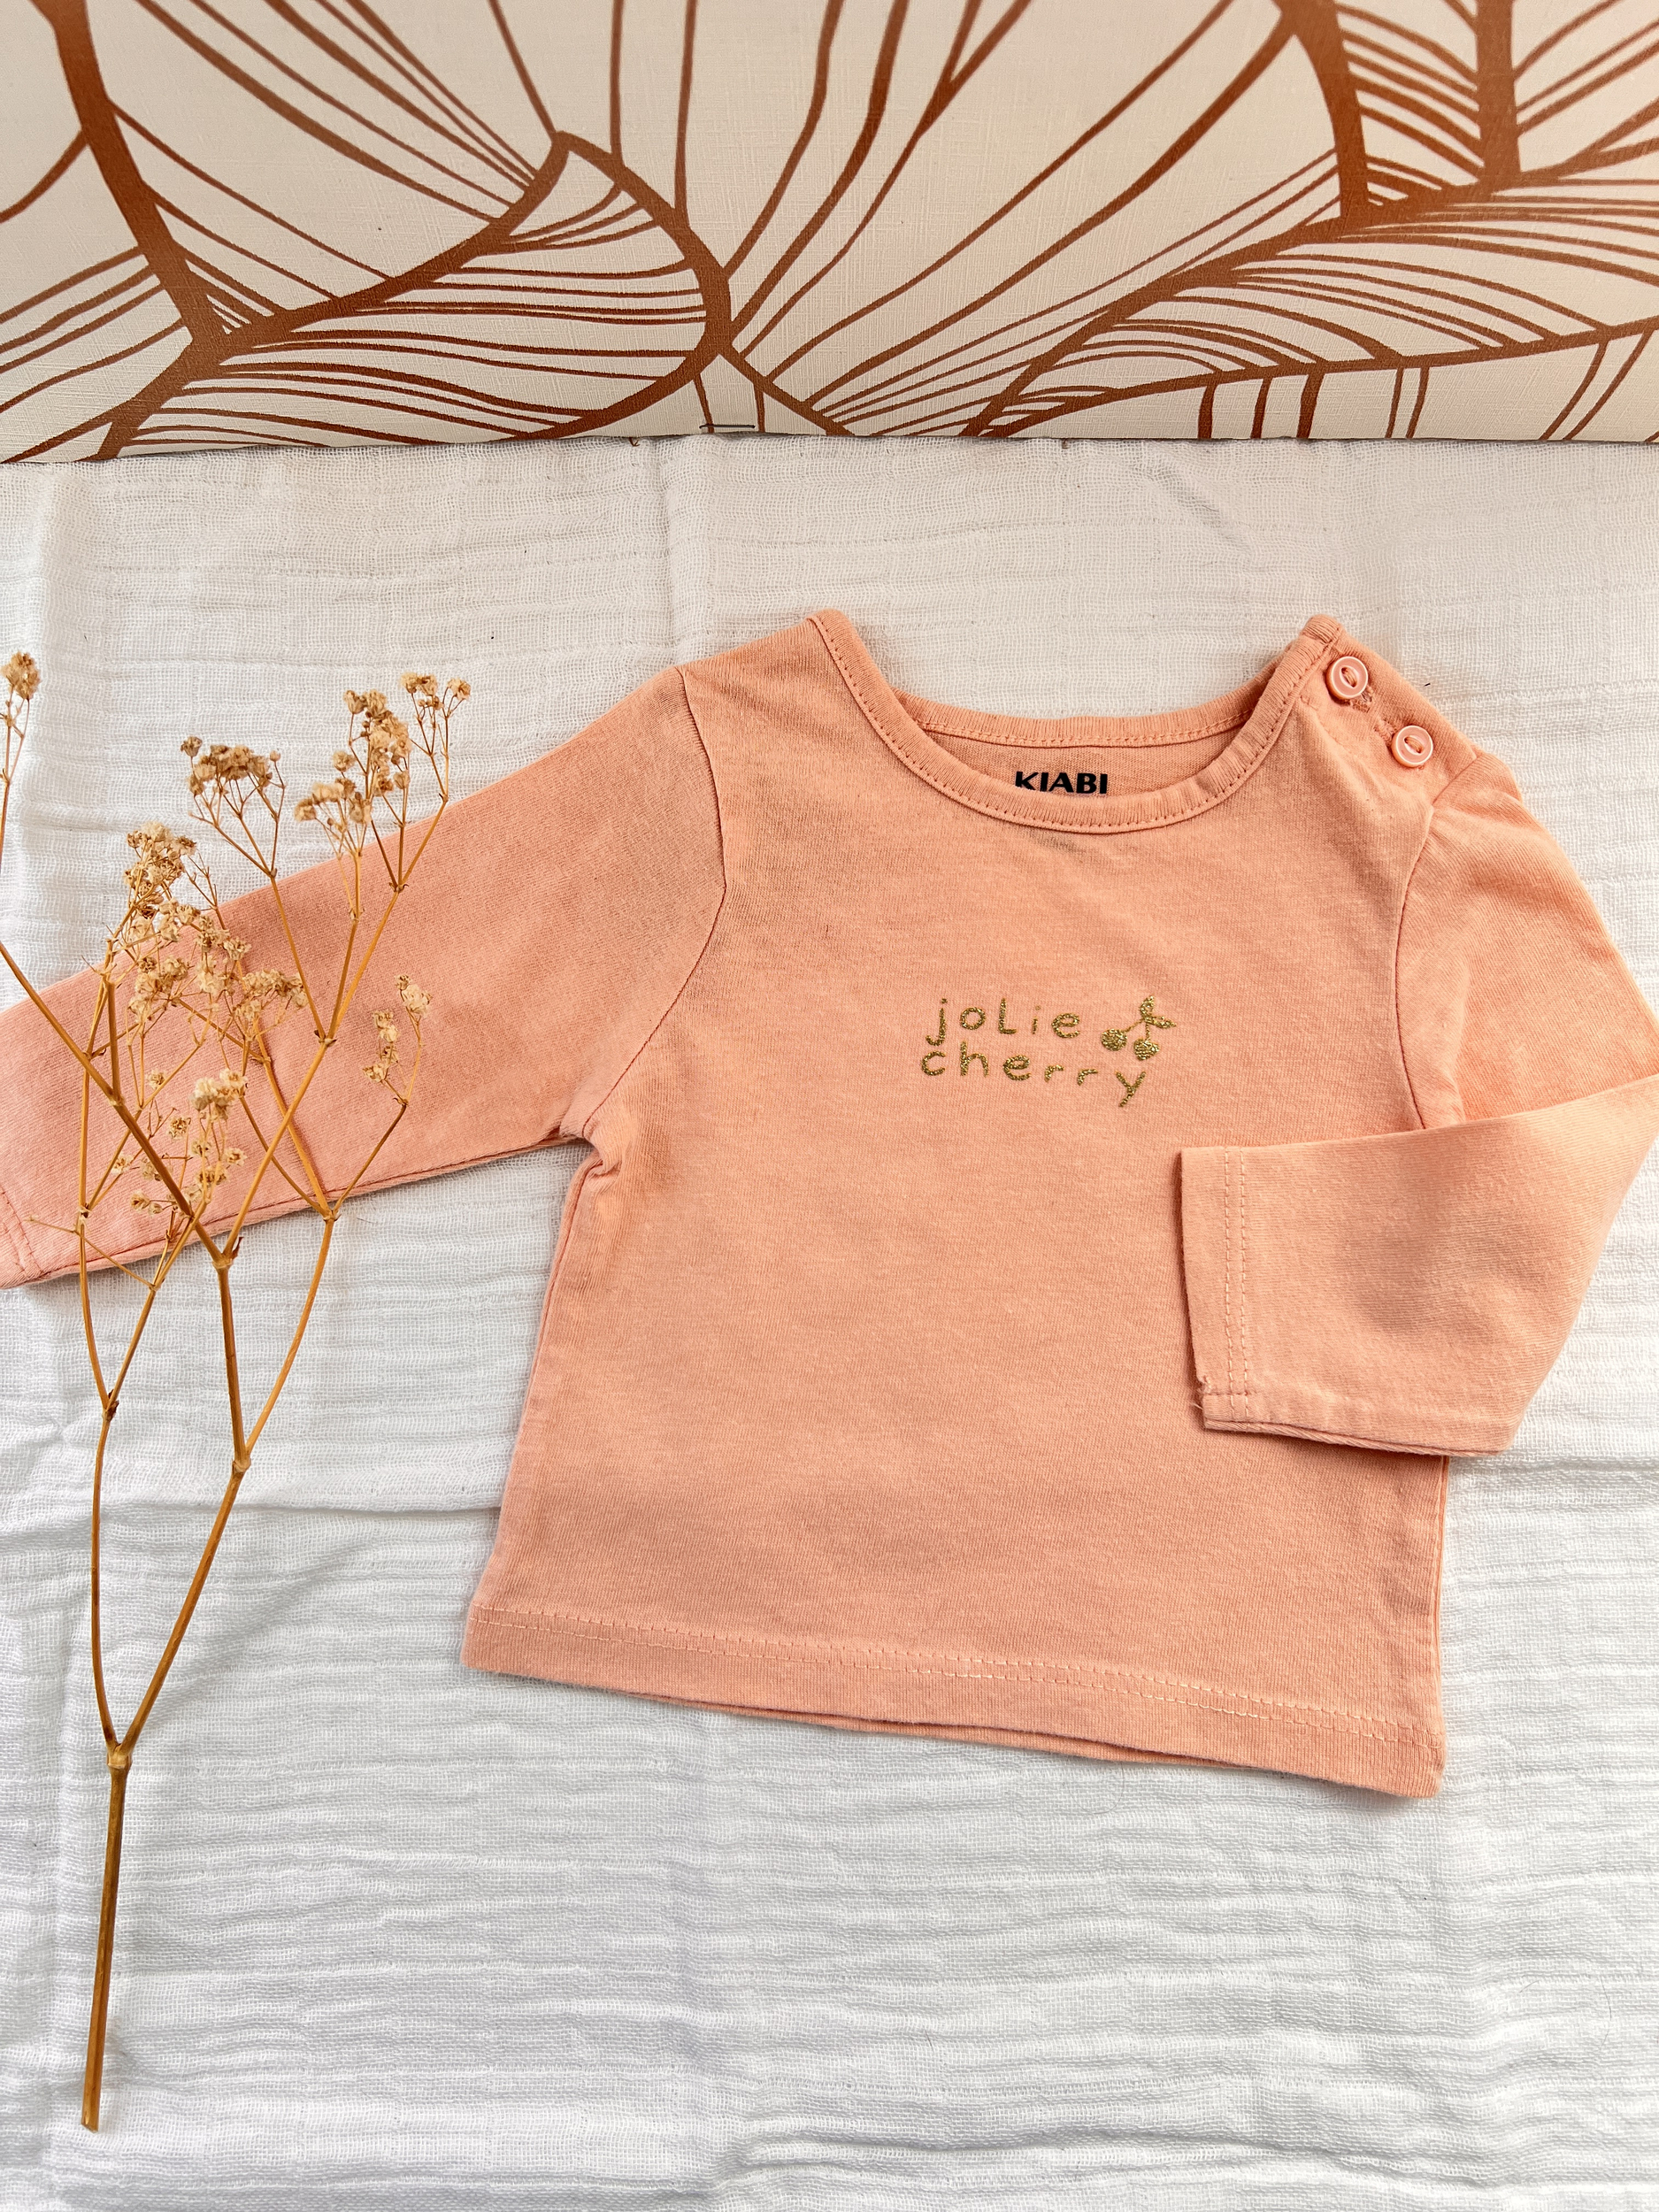 T-shirt rose manches longues bébé fille - Kiabi - 1 mois